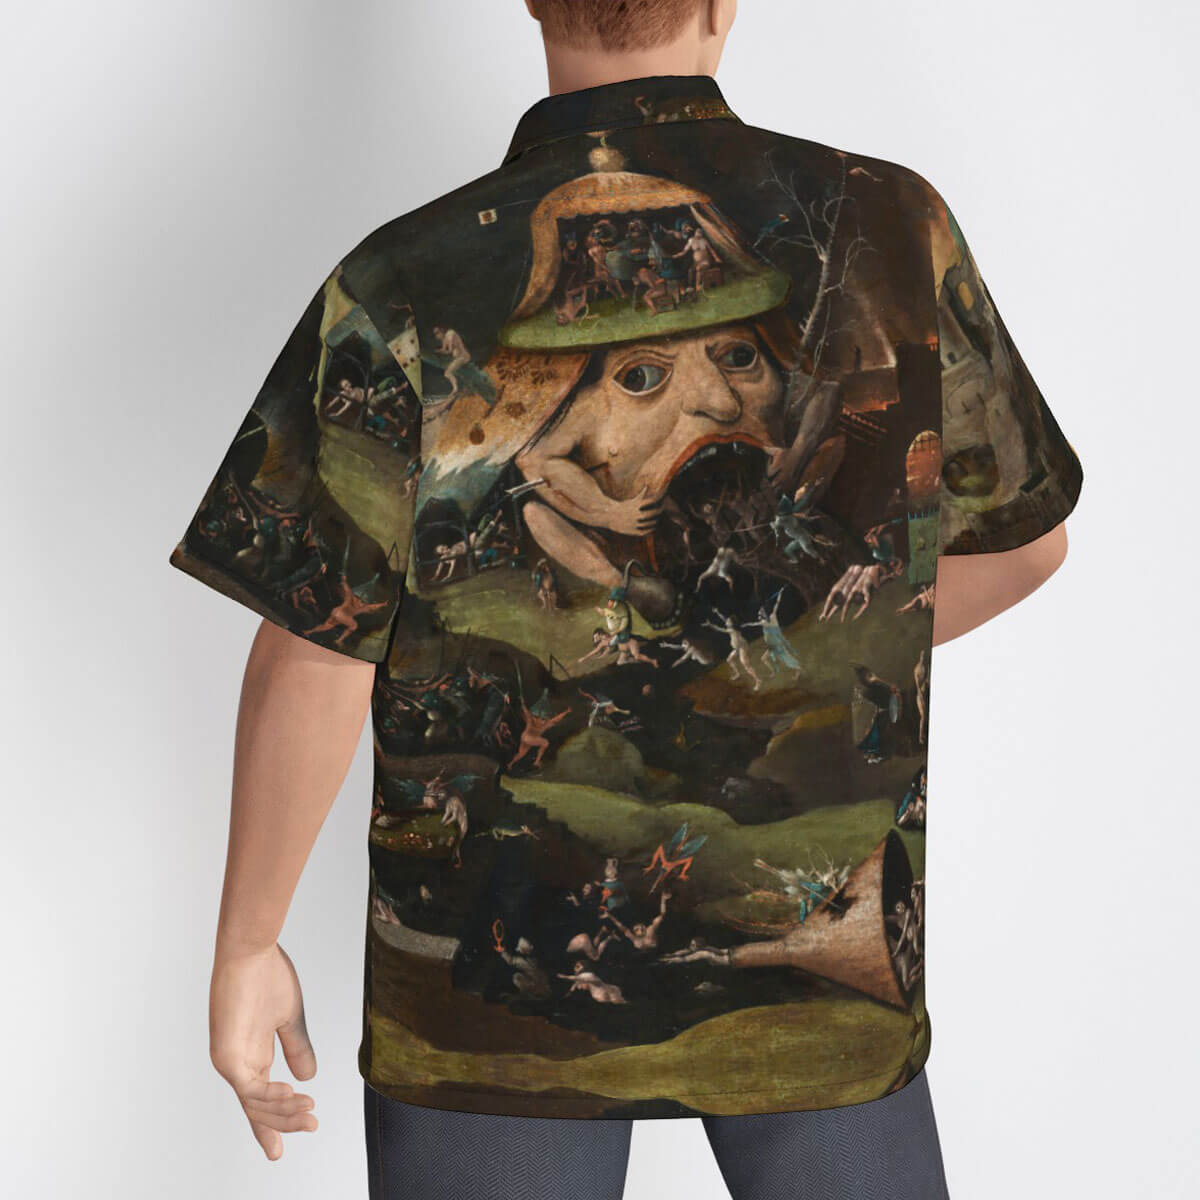 Renaissance art lover modeling Bosch aloha shirt